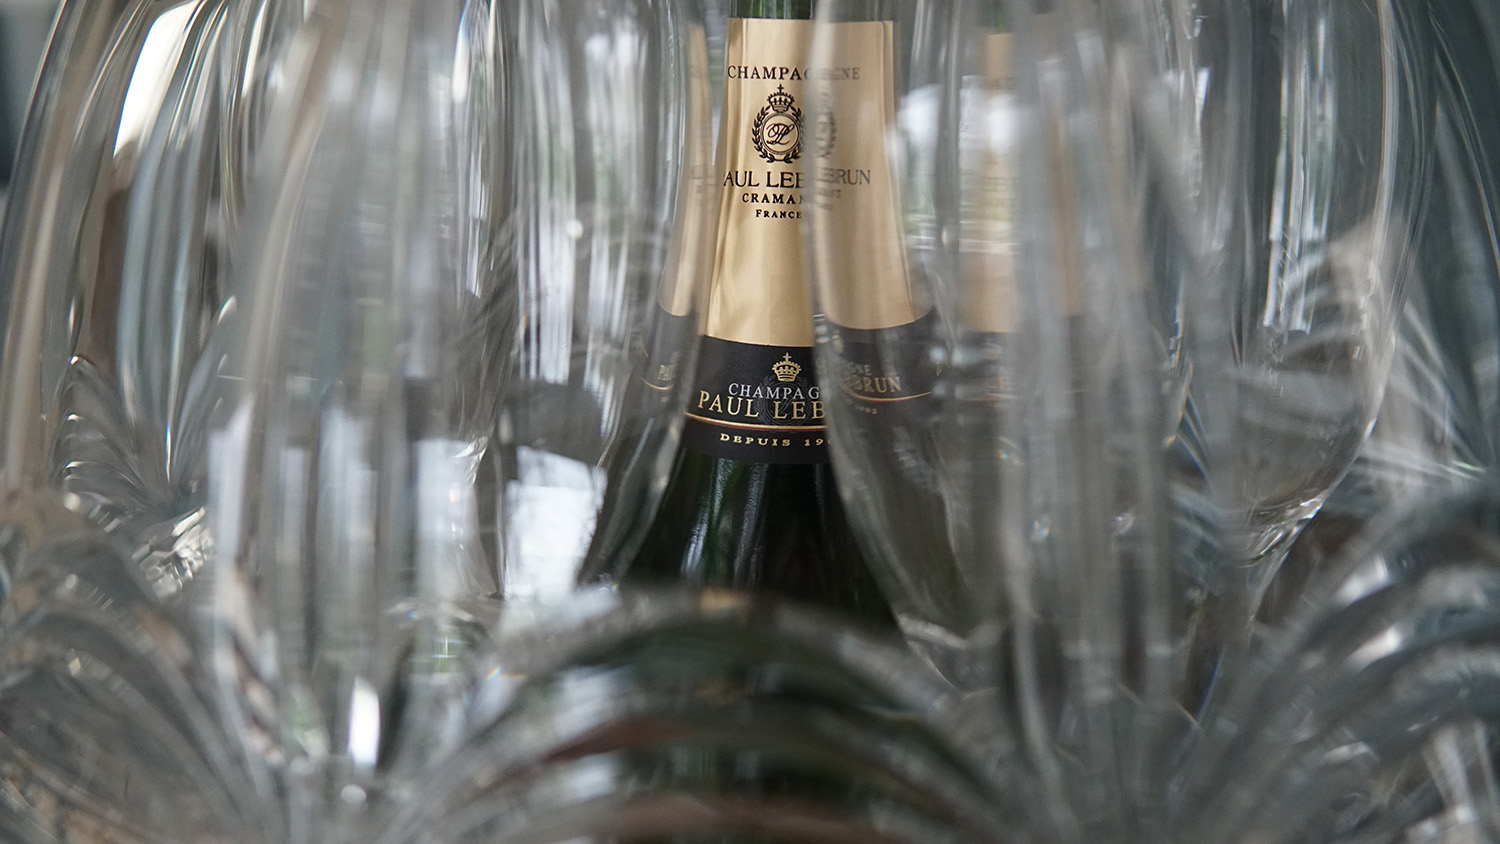 Bouteille Champagne Paul Lebrun dans un oeuf de cristal - Clos La Chapelle